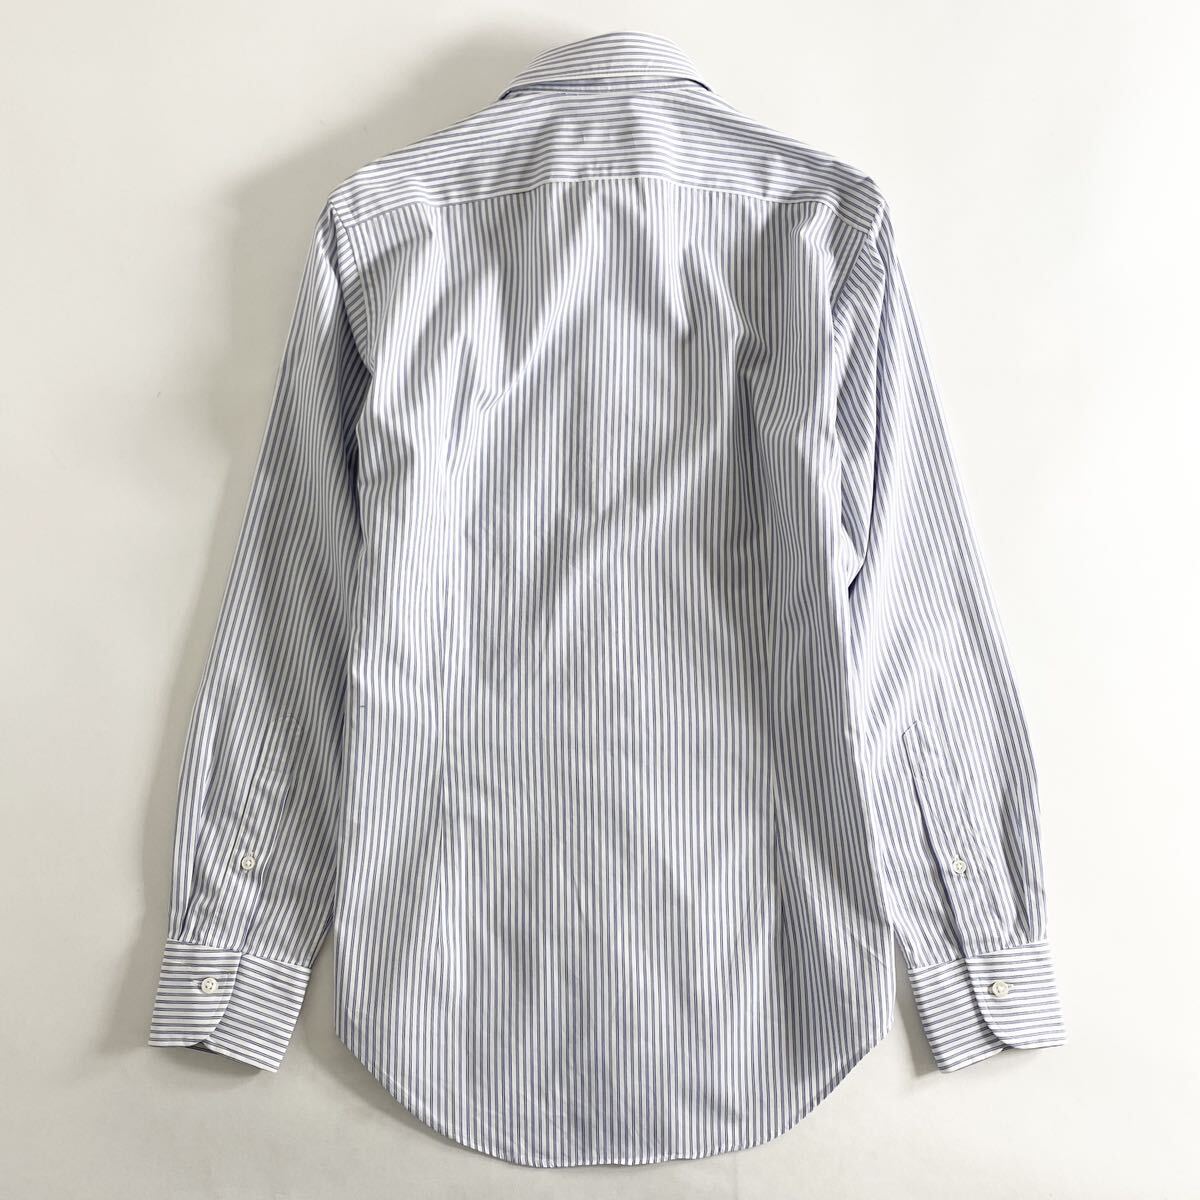 Hc22-11 日本製 Maker's Shirt 鎌倉シャツ 長袖シャツ ドレスシャツ ワイシャツ ビジネス フォーマル ストライプ 14.5/37 M相当 メンズ_画像2